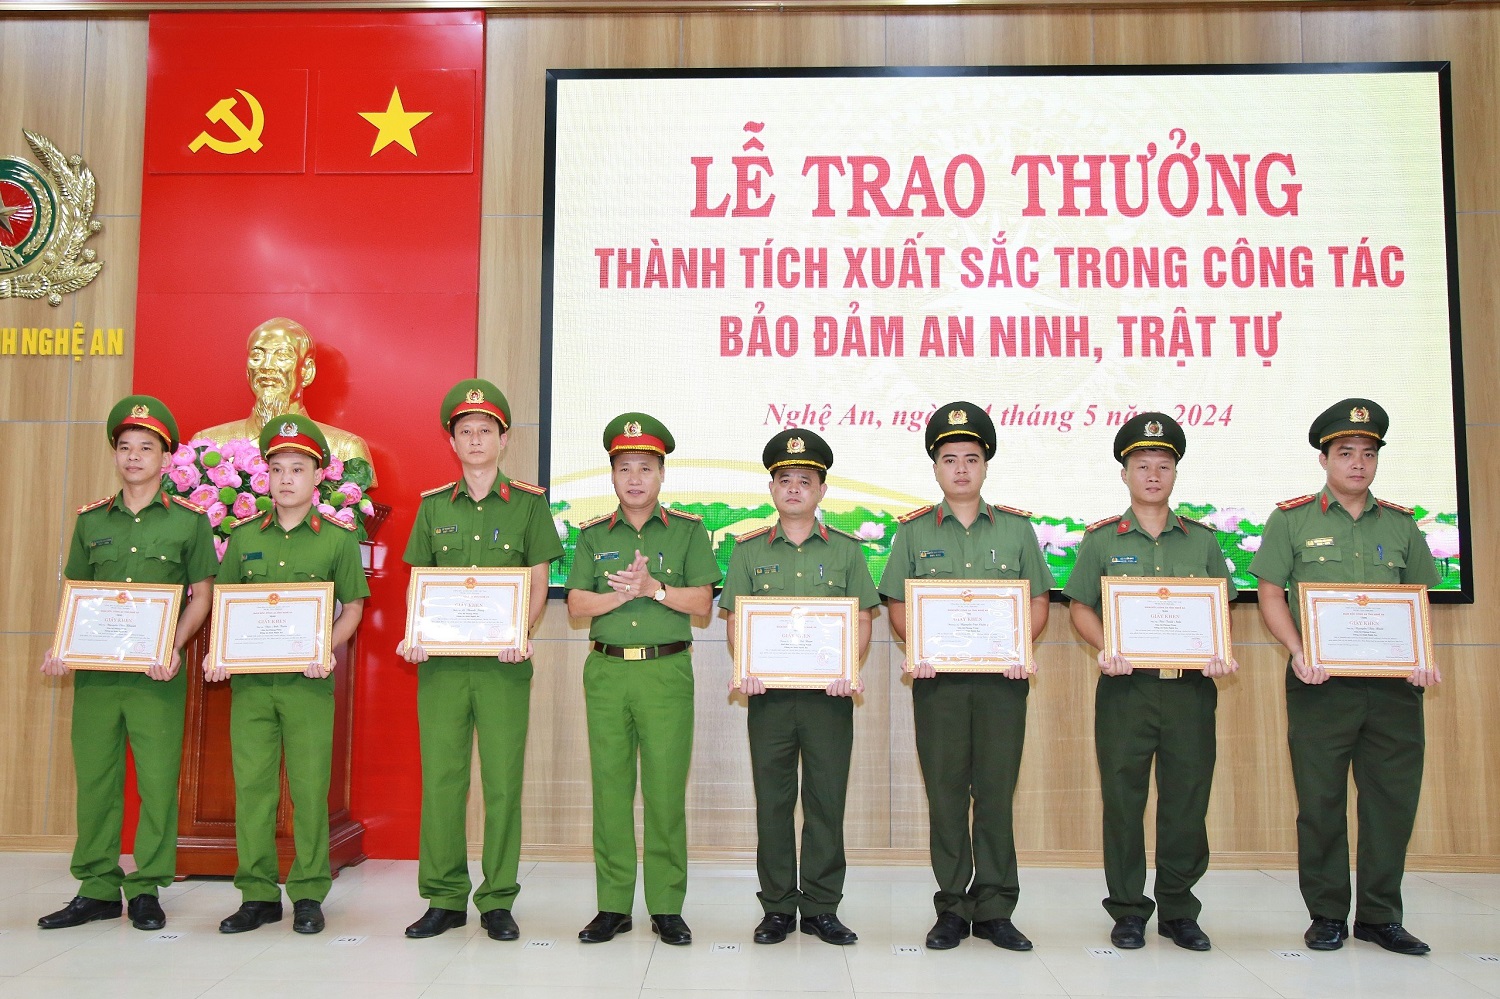 Đại tá Nguyễn Duy Thanh, Phó Giám đốc Công an tỉnh trao Giấy khen của Giám đốc Công an tỉnh tặng các cá nhân có thành tích xuất sắc